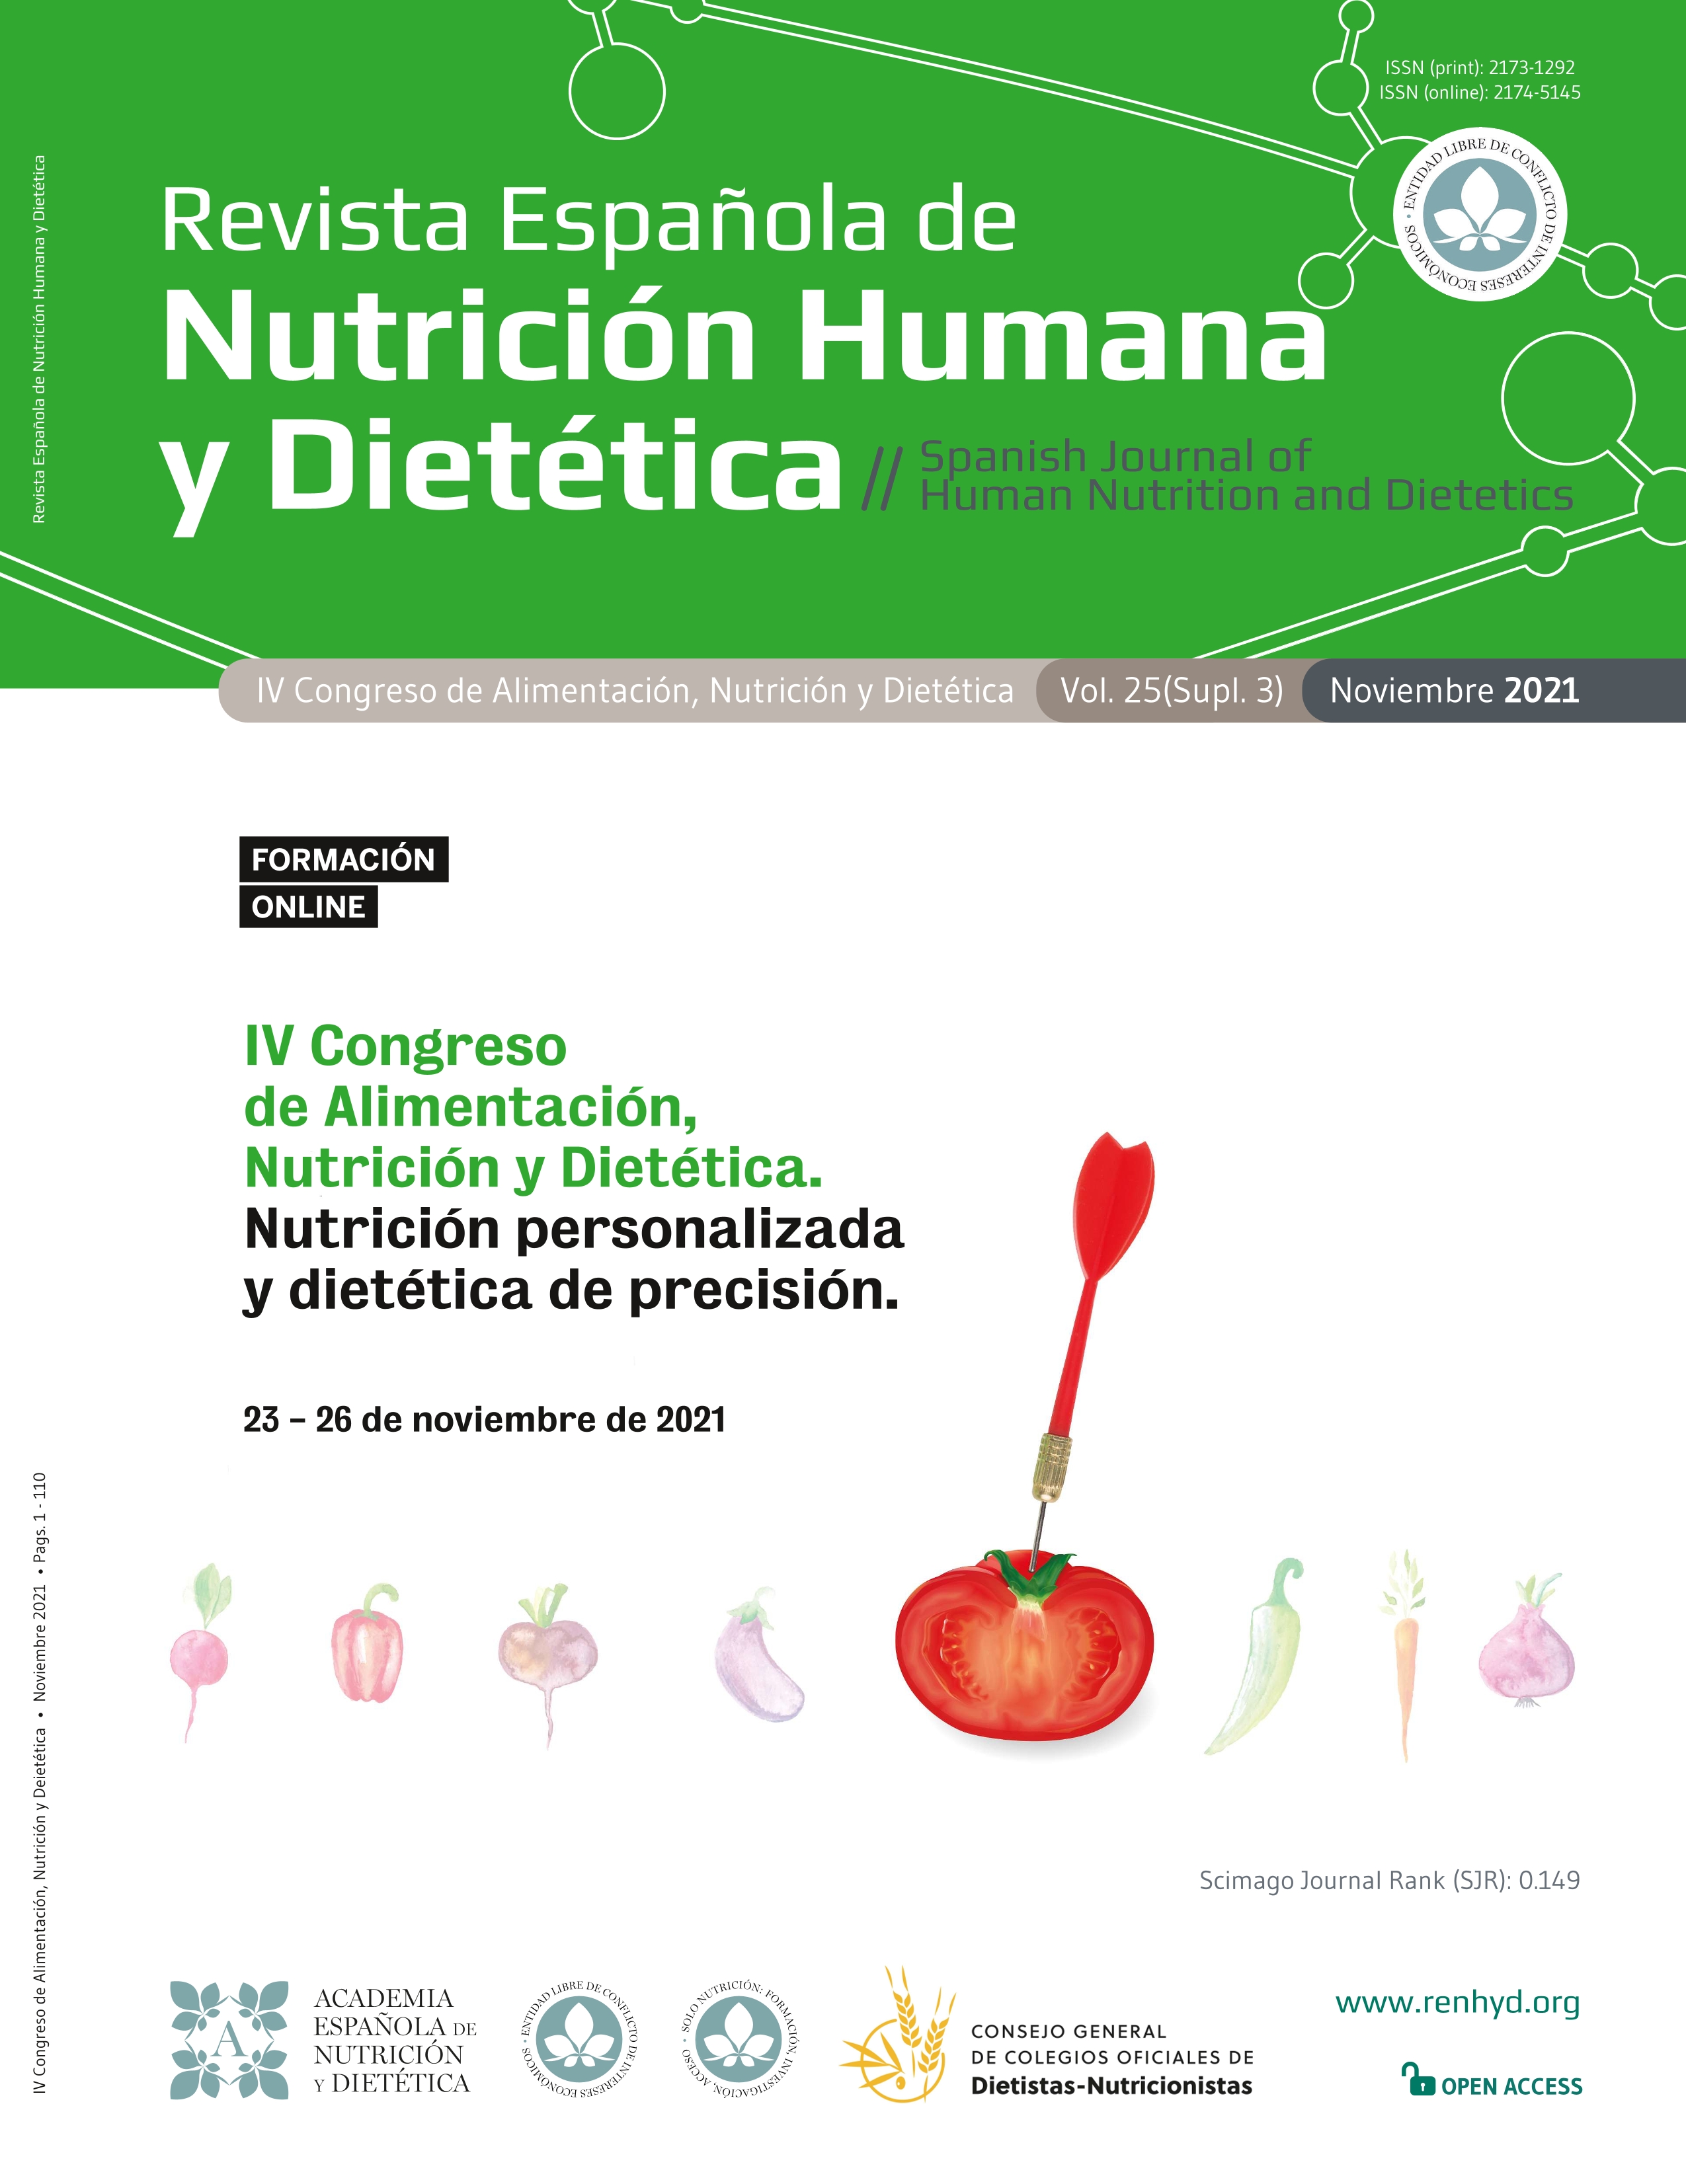 El método del plato - Alicia Molina dietista-nutricionista